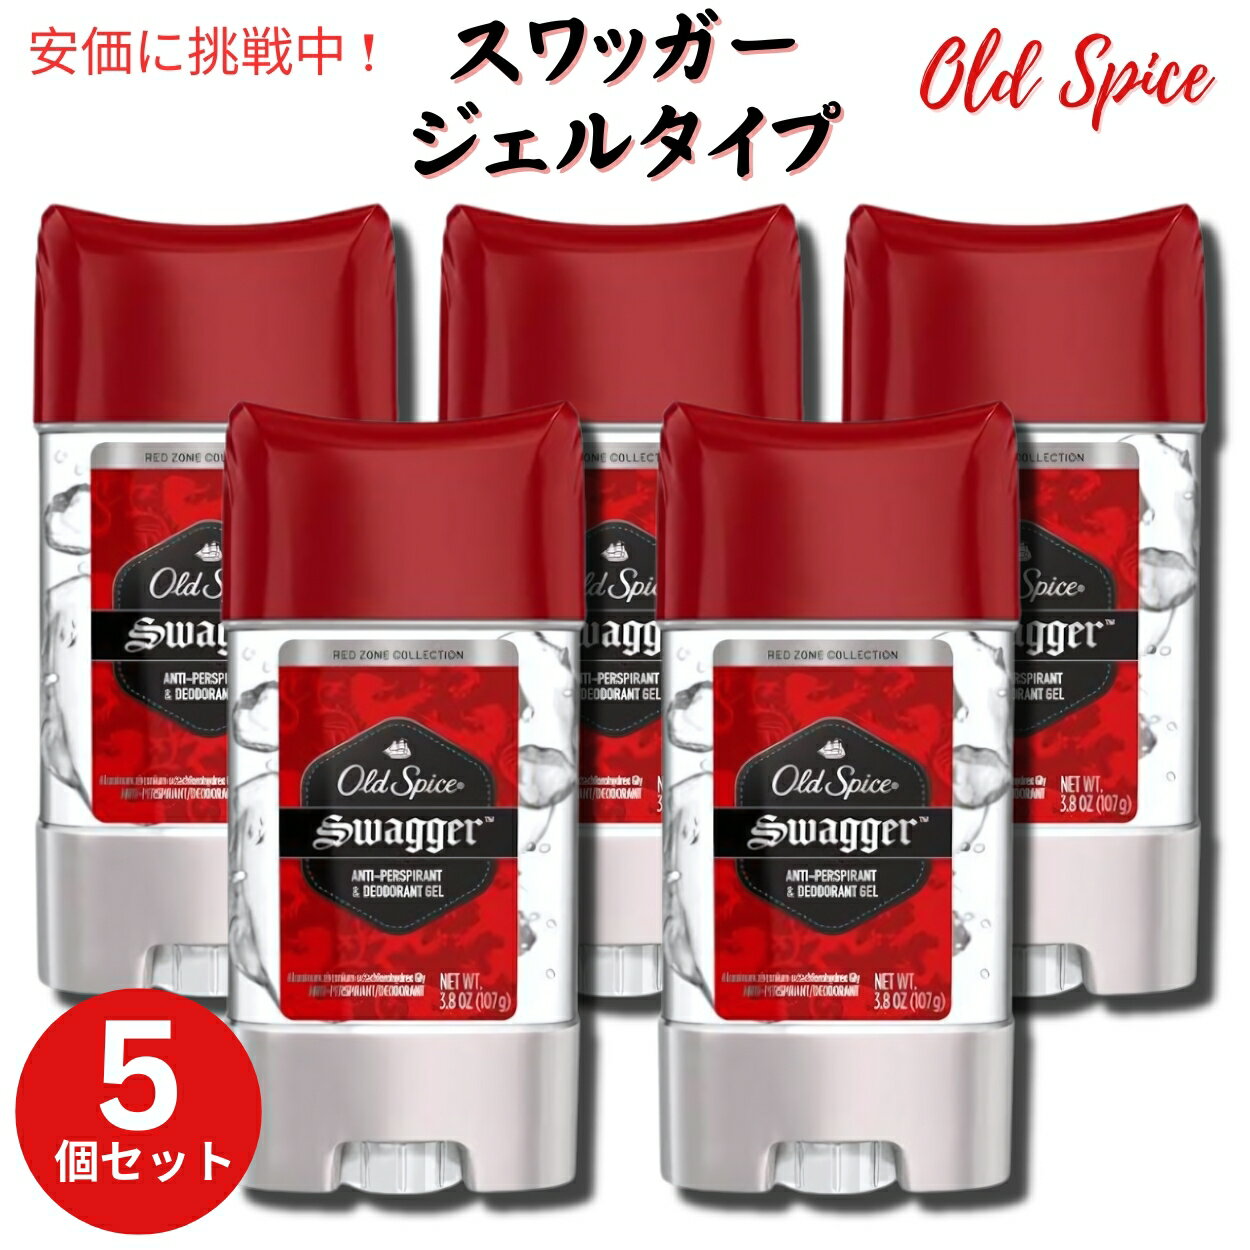 y5ZbgzOld Spice I[hXpCX WF^Cv fIhg 107g [XbK[] Red Zone GEL Deodorant Swagger Scent 3.8oz